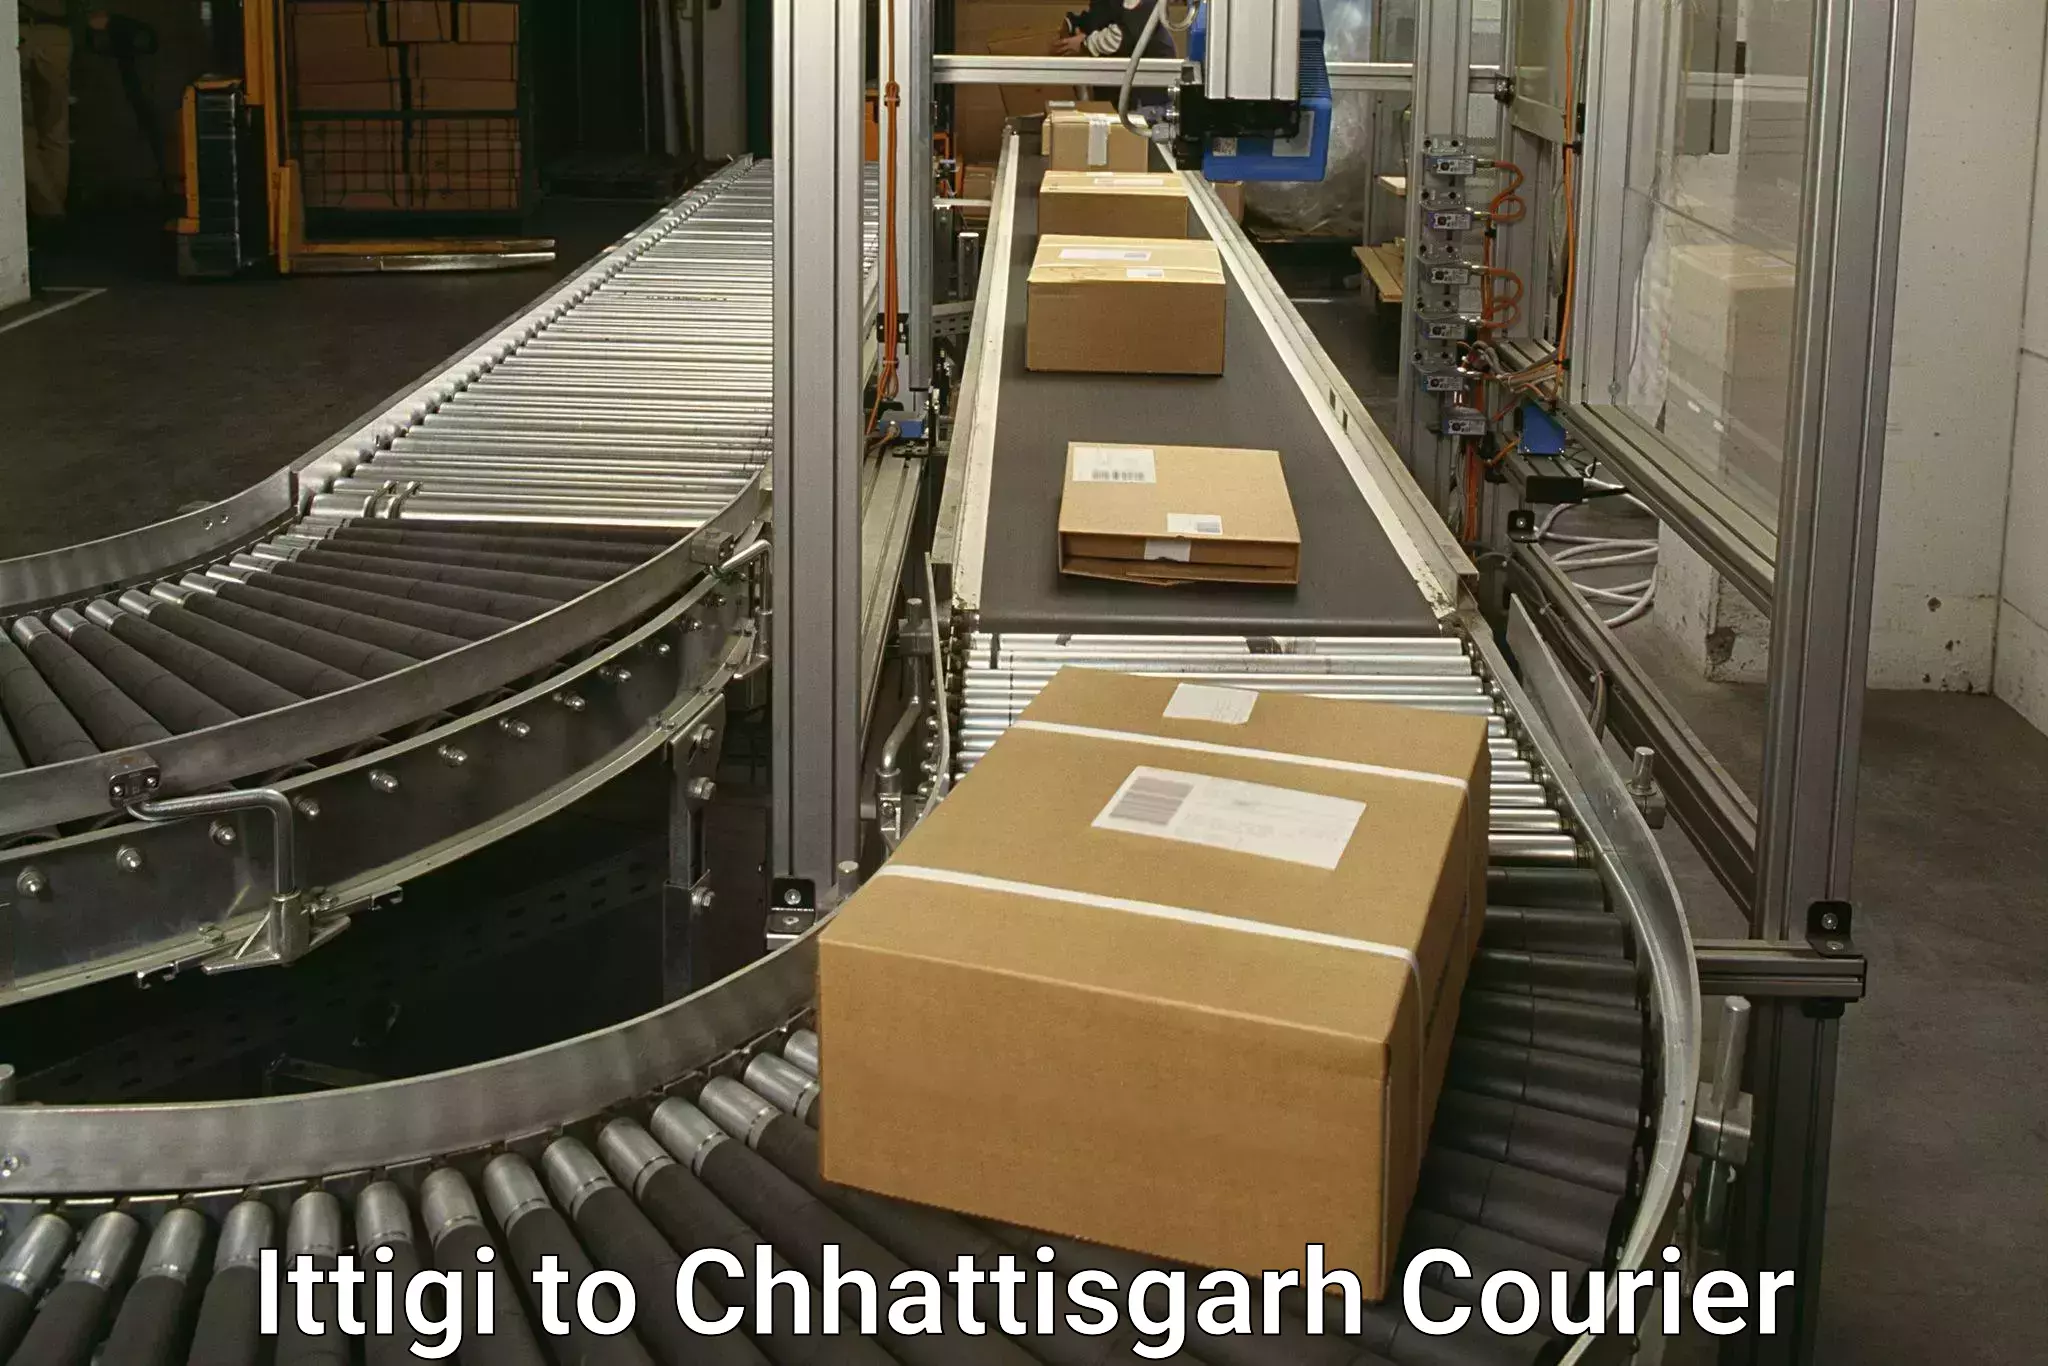 Local delivery service Ittigi to Chhattisgarh